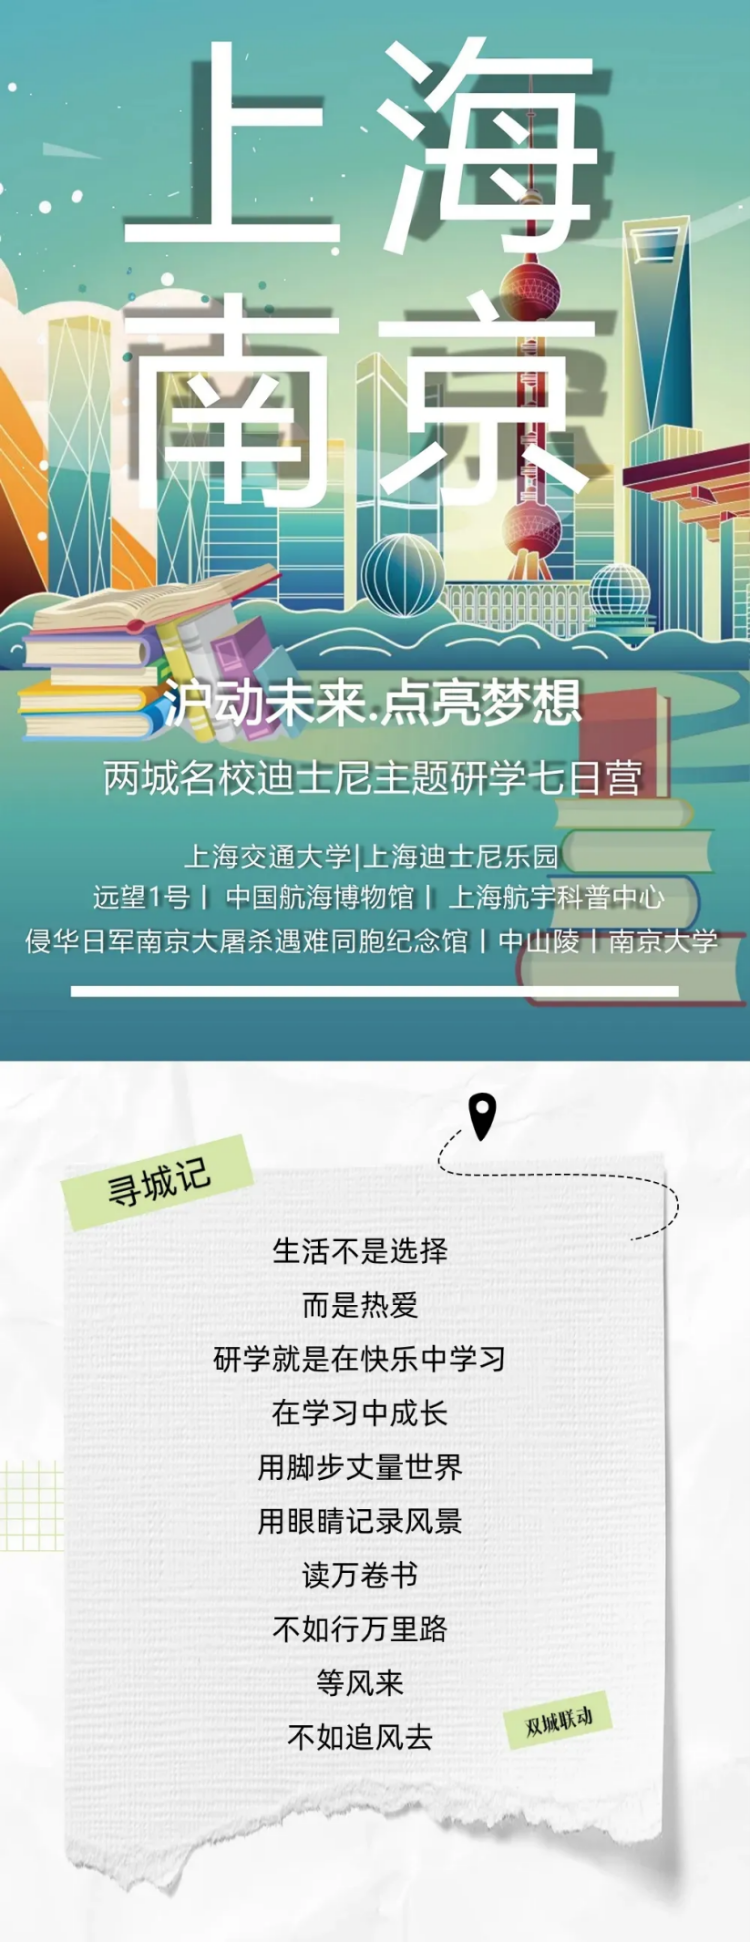 上海航宇科普中心门票图片